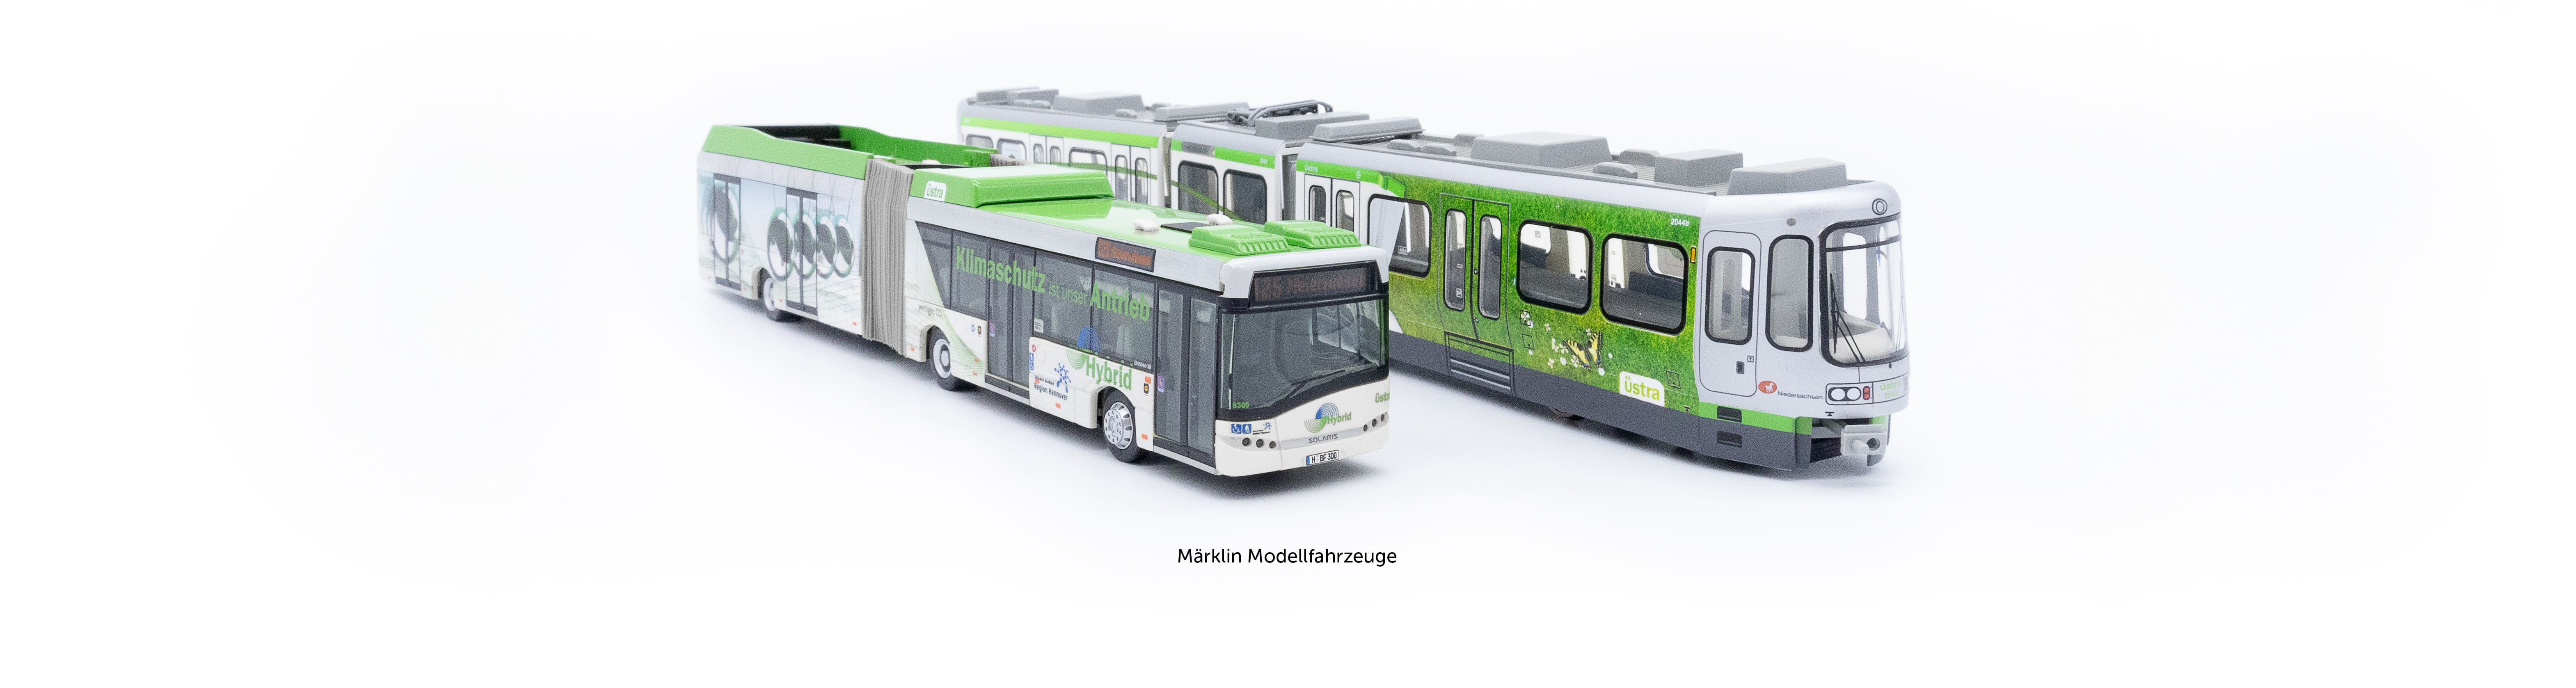 Modellfahrzeuge des Herstellers Märklin im Design der ÜSTRA, ein Bus und eine Bahn.